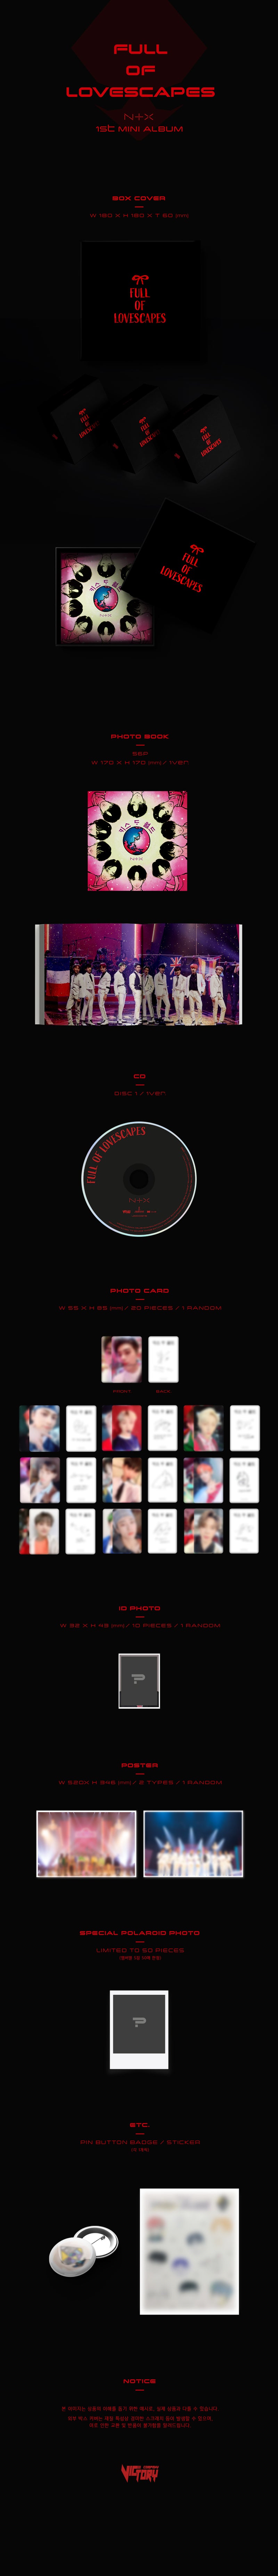 NTX - Mini Album Vol.1 [FULL OF LOVESCAPES] (Special Edition)